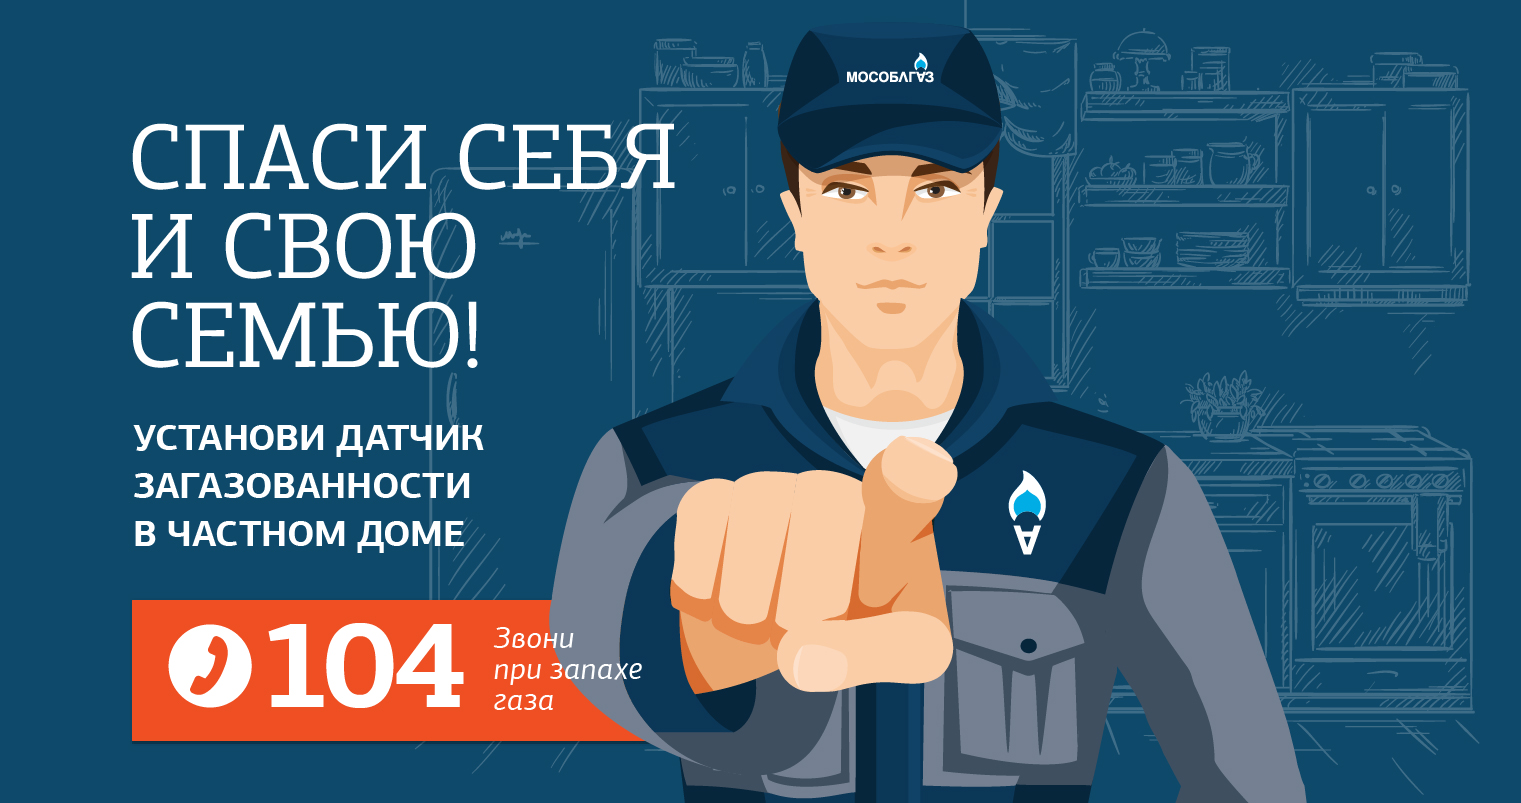 «Мособлгаз» рекомендует жителям Красногорска установить датчики контроля загазованности